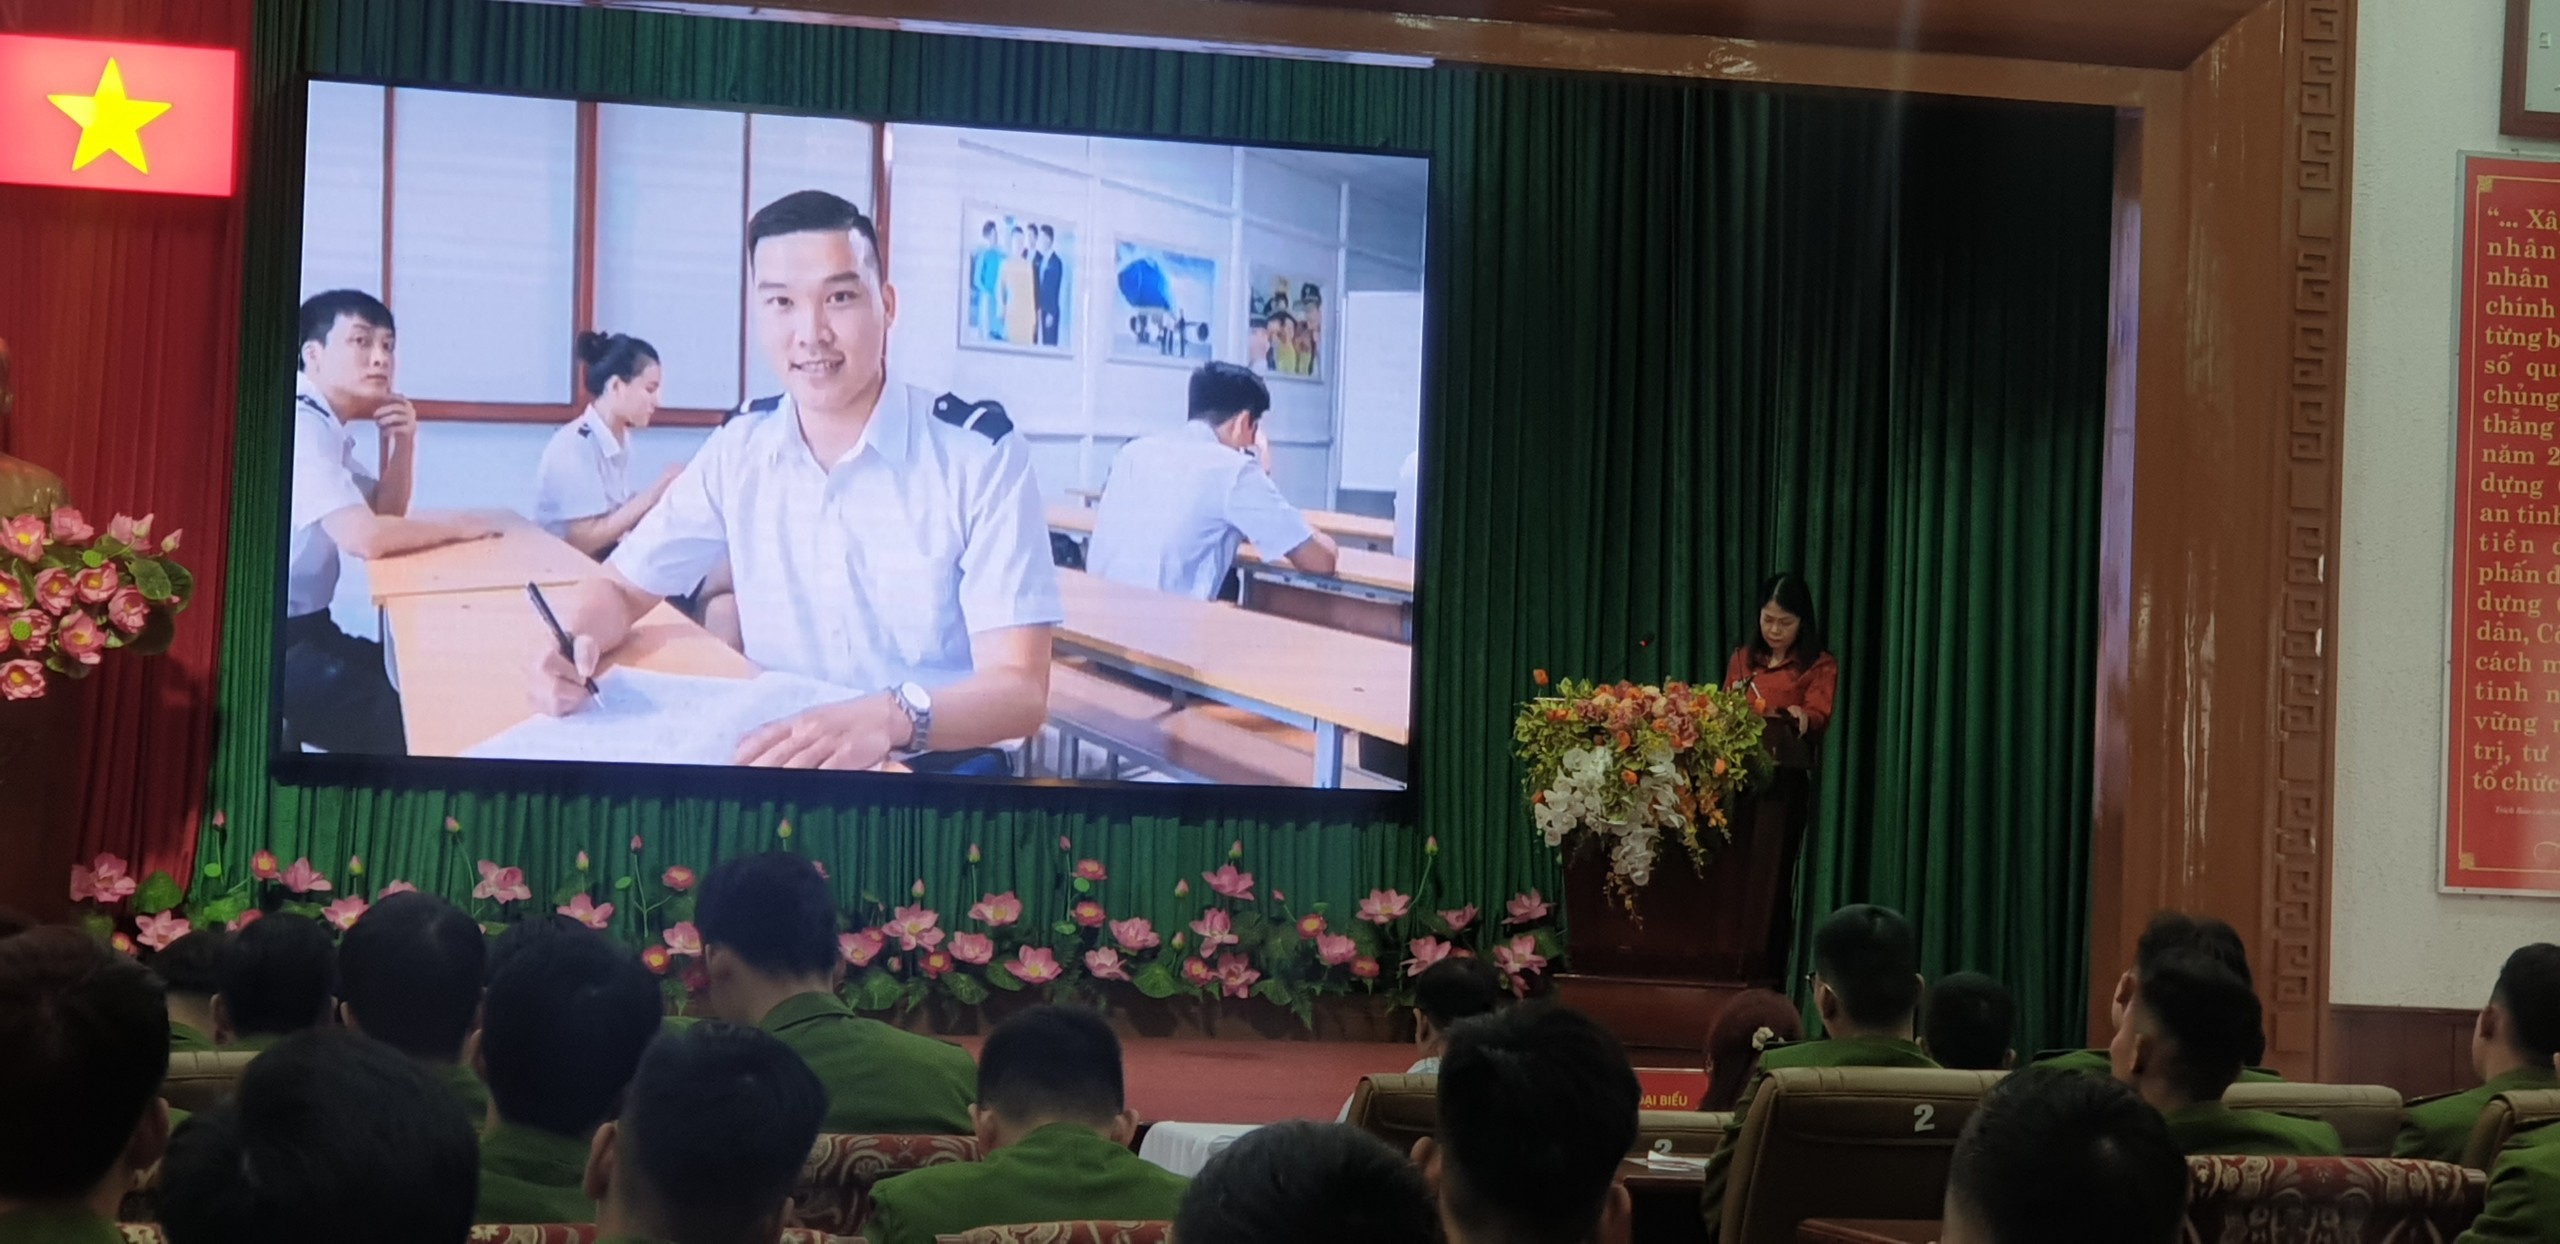 TVPTS Quảng Bình-Hướng nghiệp nghề cho hạ sỹ quan nghĩa vụ CAND tỉnh Thừa Thiên Huế